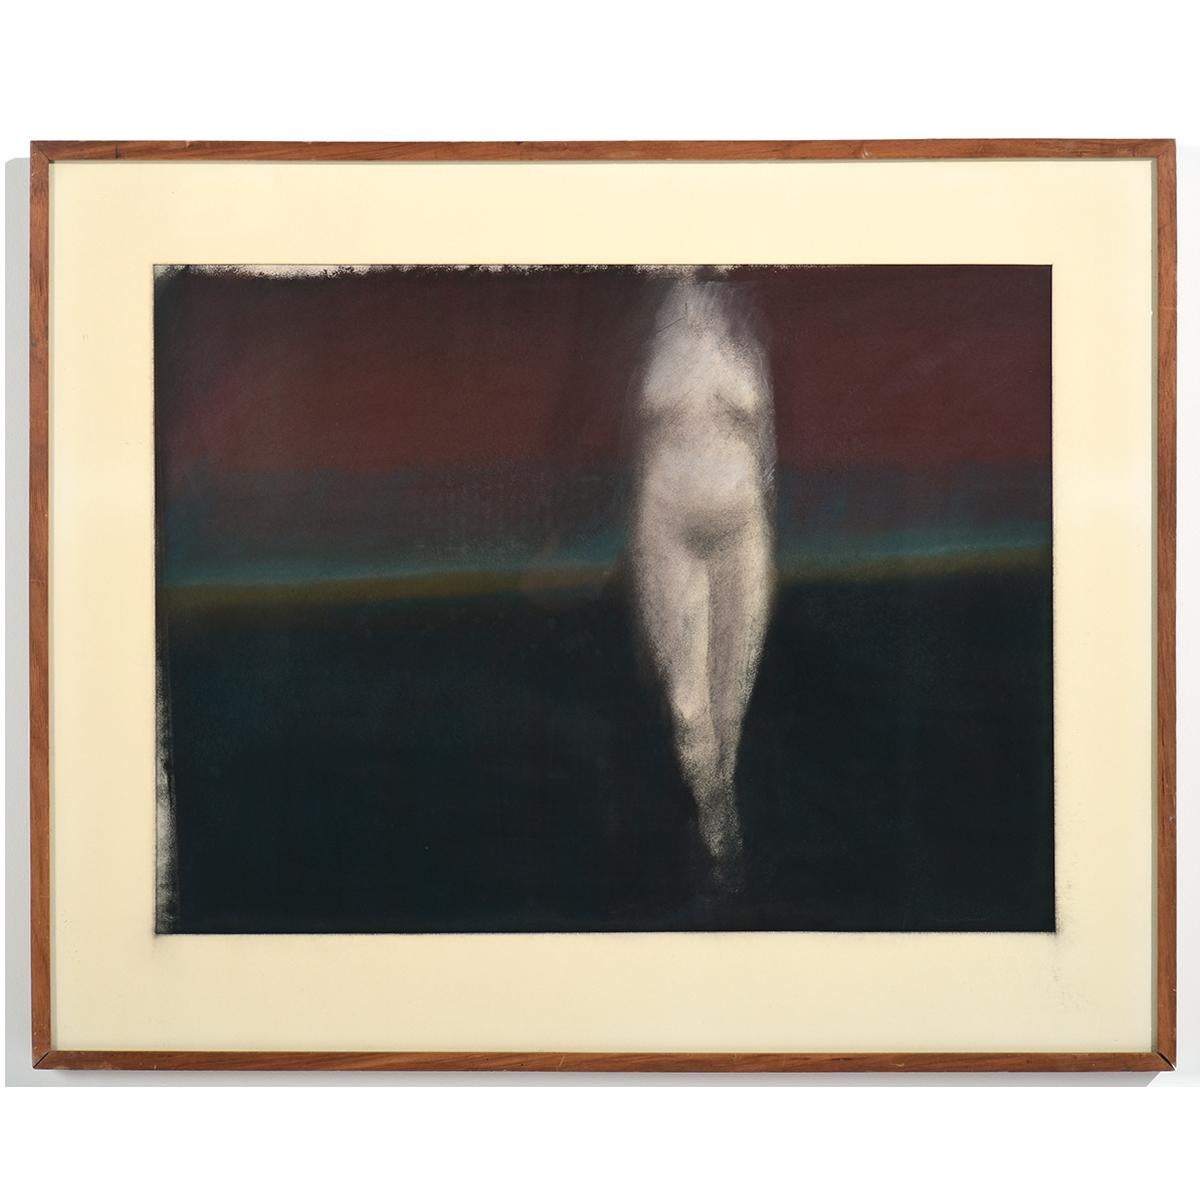 "The Model #5" ist ein Pastell auf Papier, das eine nackte weibliche Figur zeigt, die aus einem scheinbar abendlichen, sich verdunkelnden Nebel auftaucht, der eine ferne Landschaft andeutet, oder vielleicht taucht sie aus dem Meer auf. Die Figur